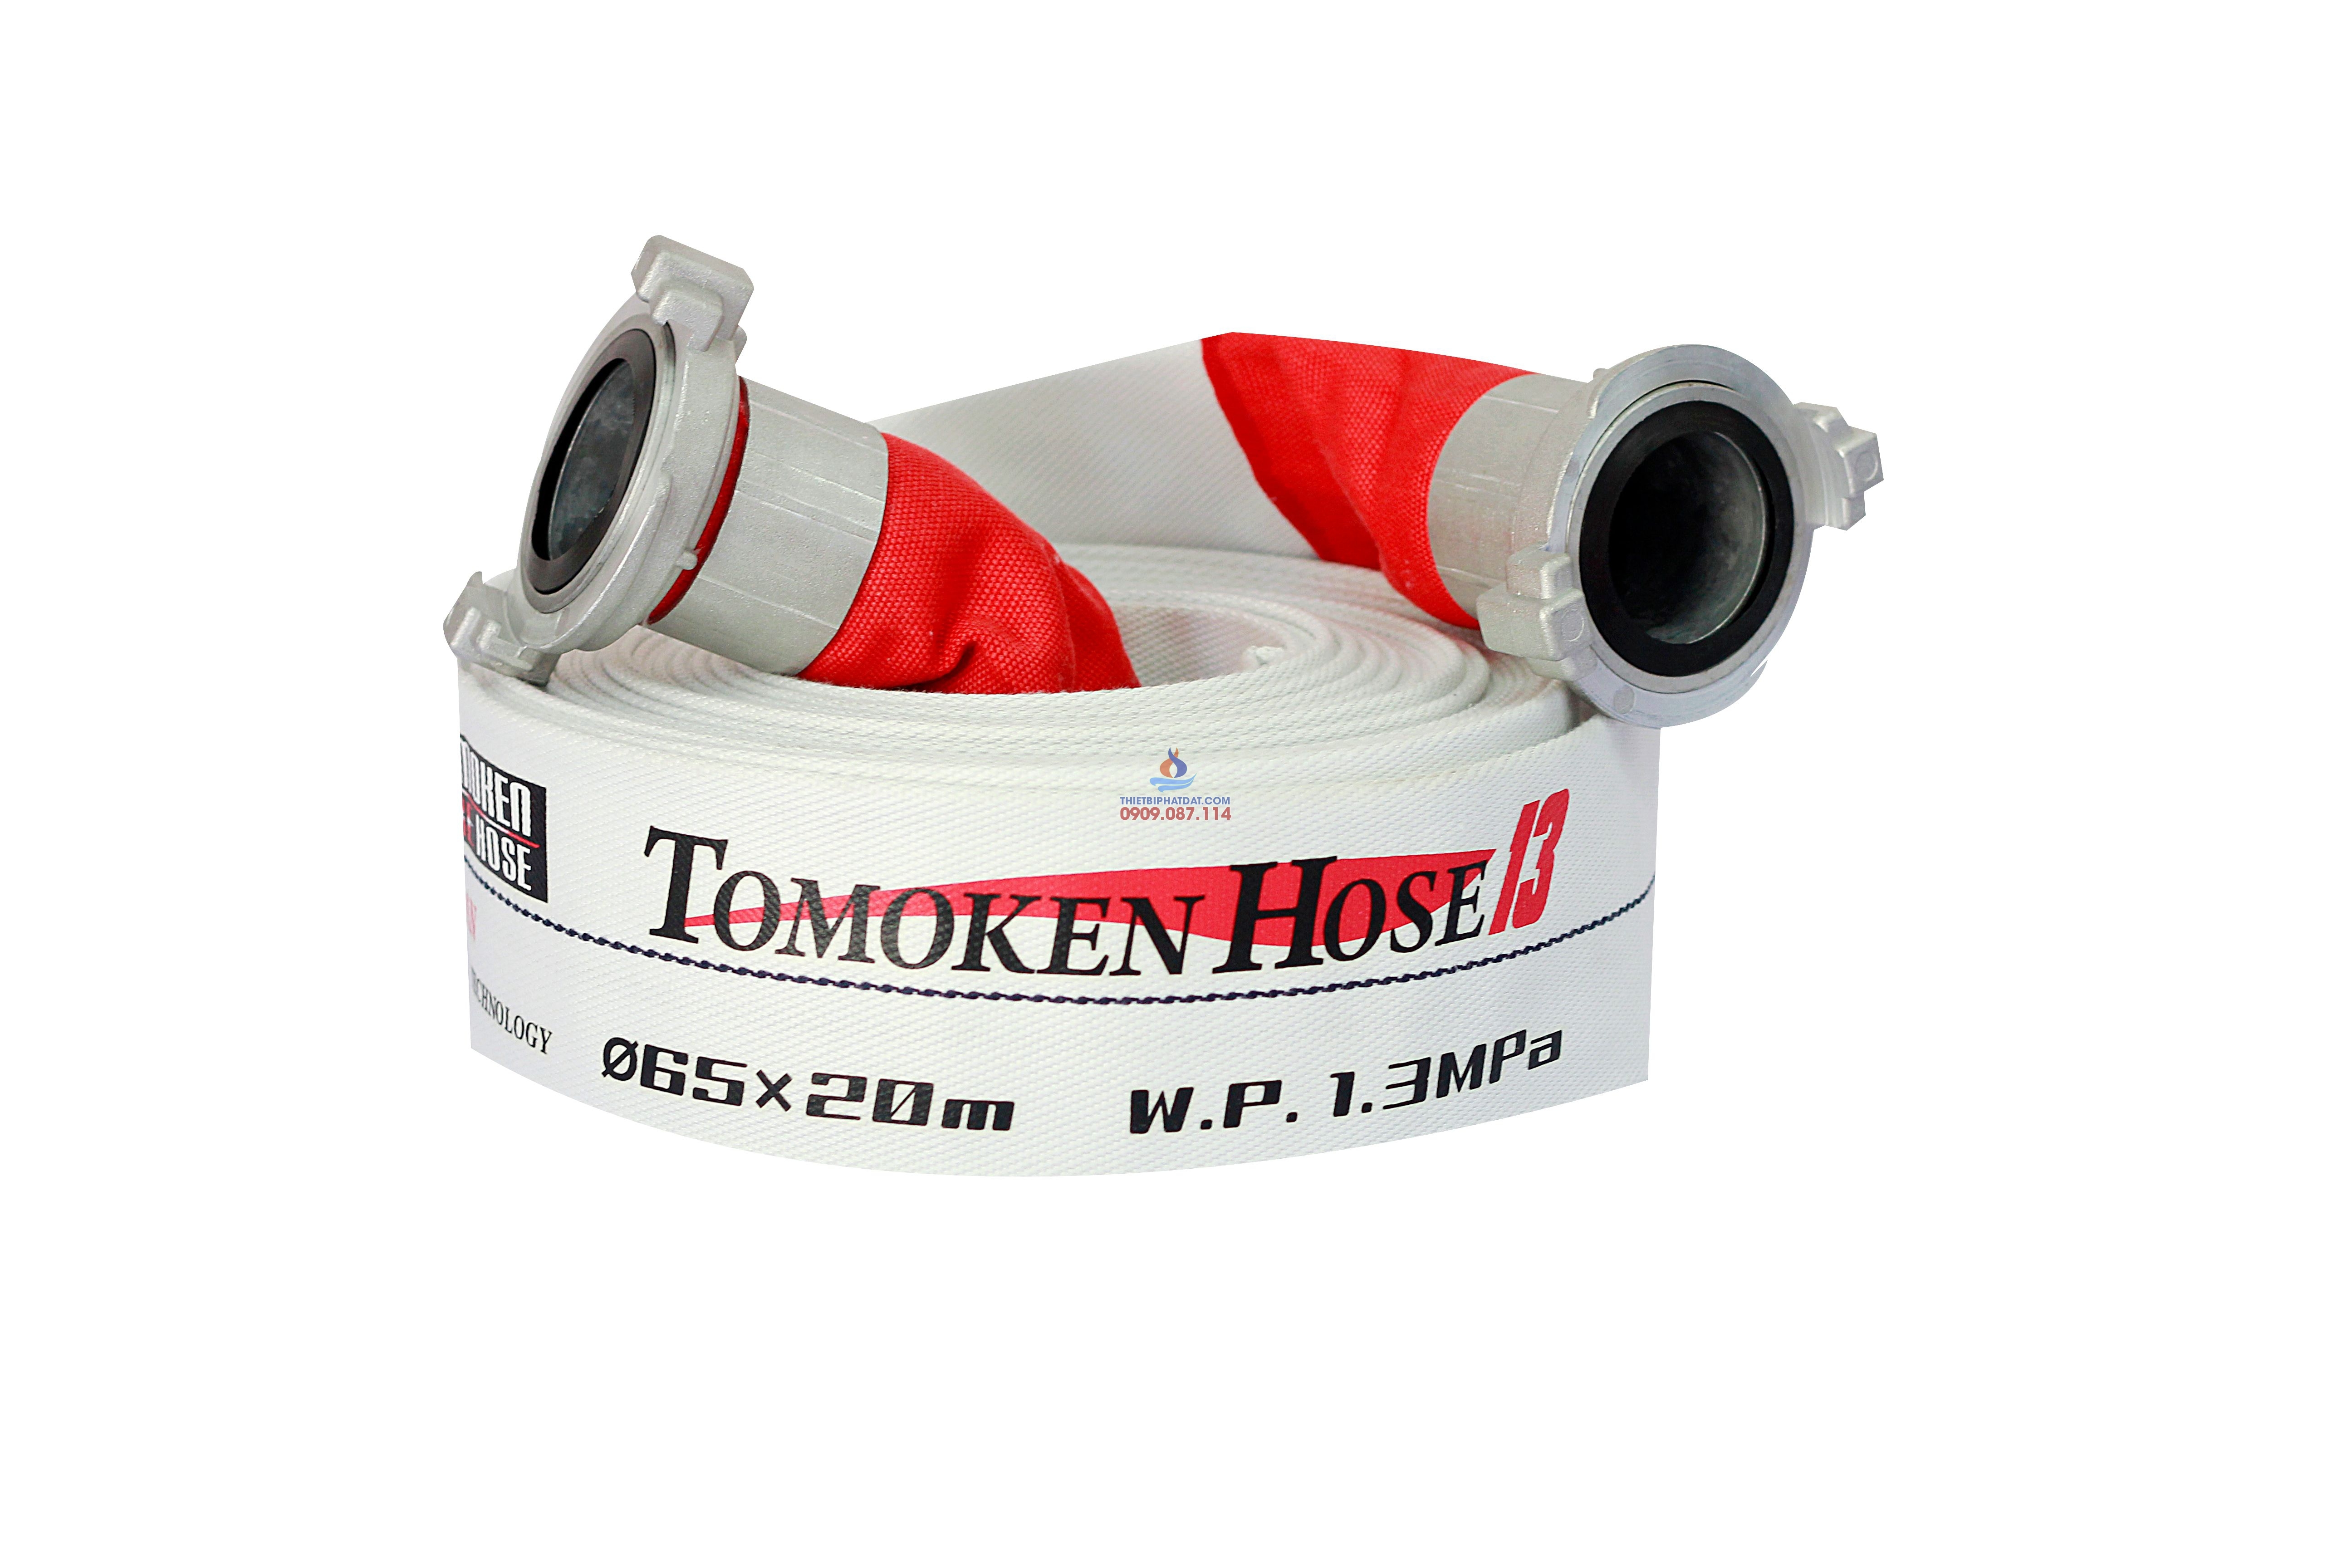 Vòi Chữa Cháy Tomoken Pro DN65-20M-16Bar